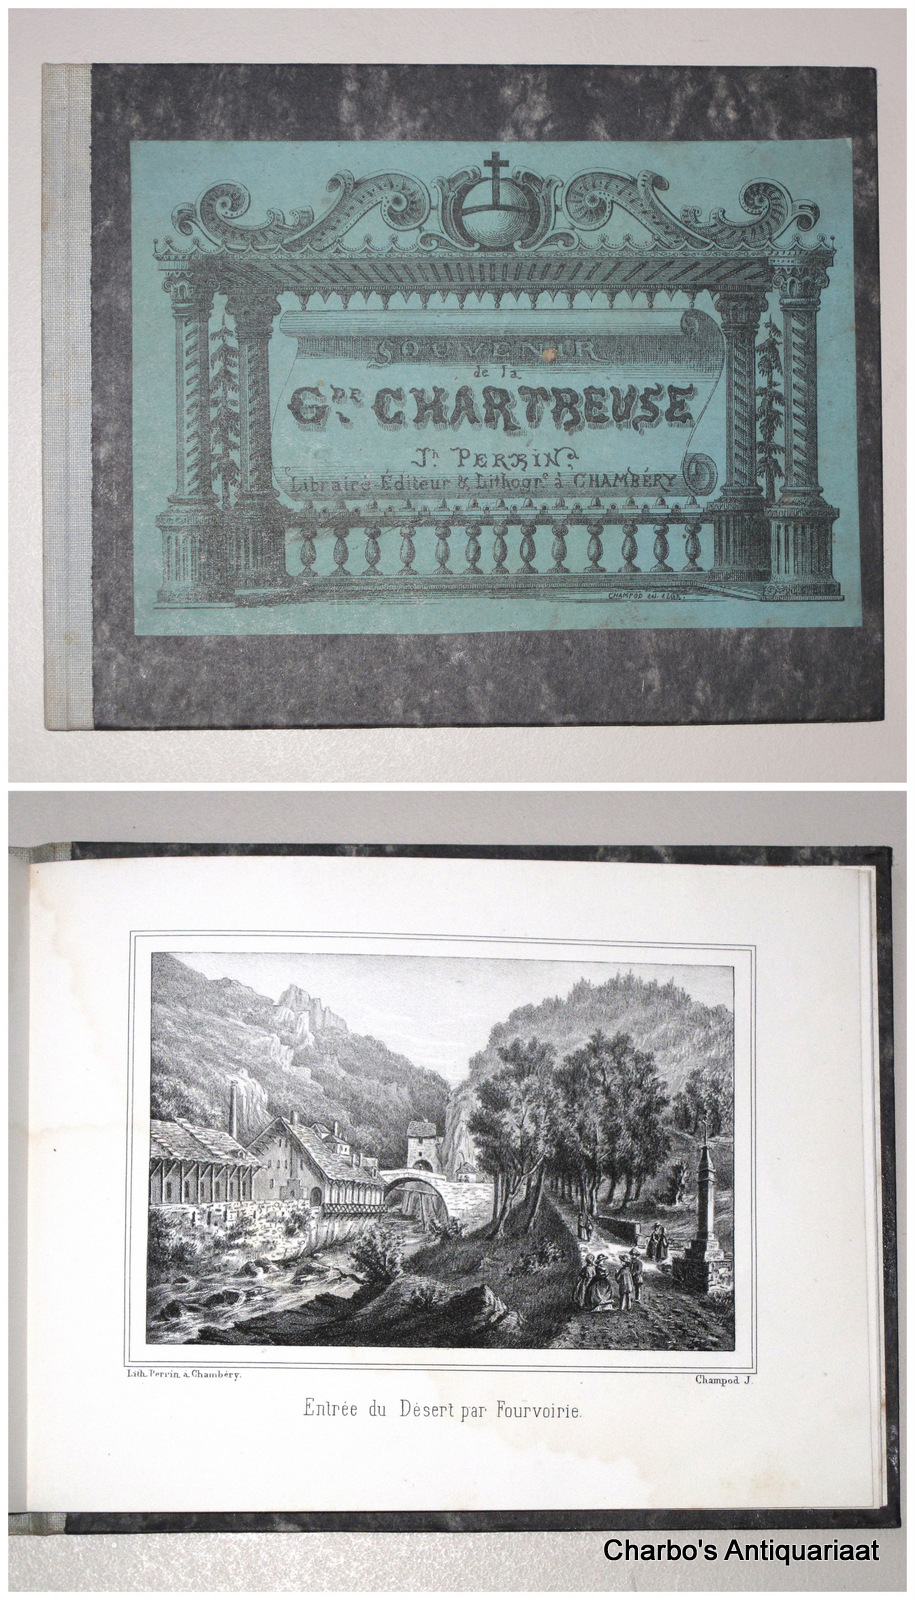 N/A, -  Souvenir de la G.de Chartreuse.